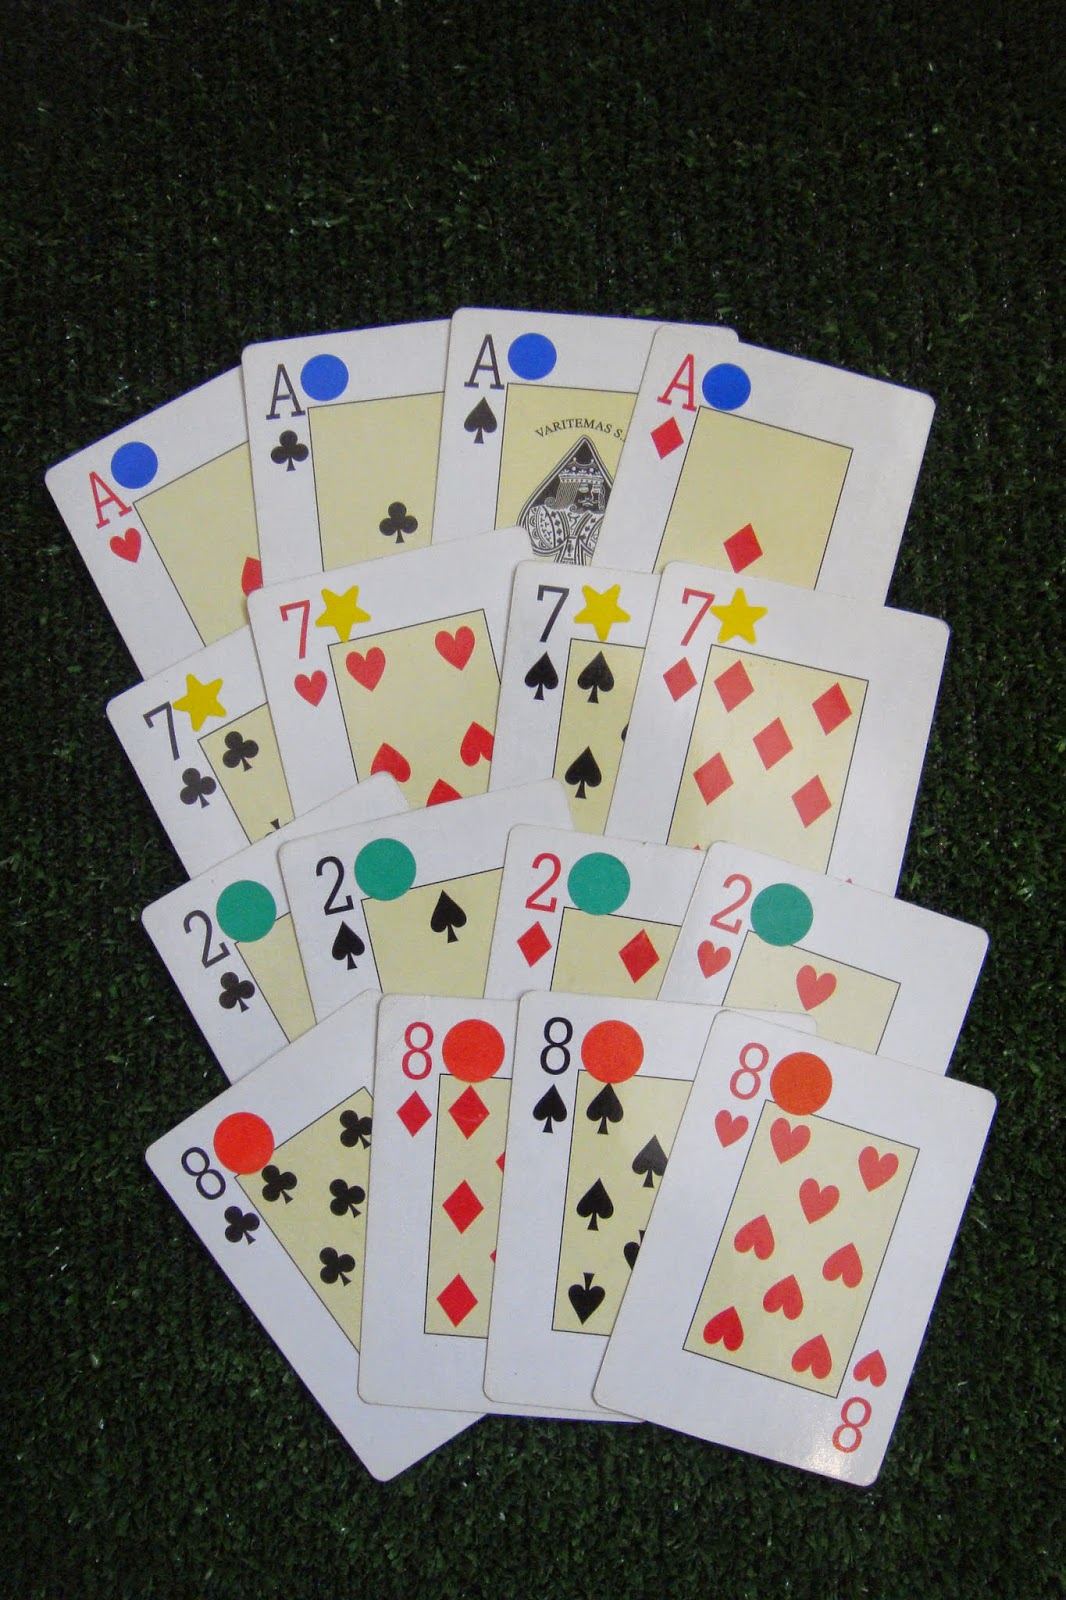 Majora reedita clássico jogo de cartas Burro Preto para salvar o